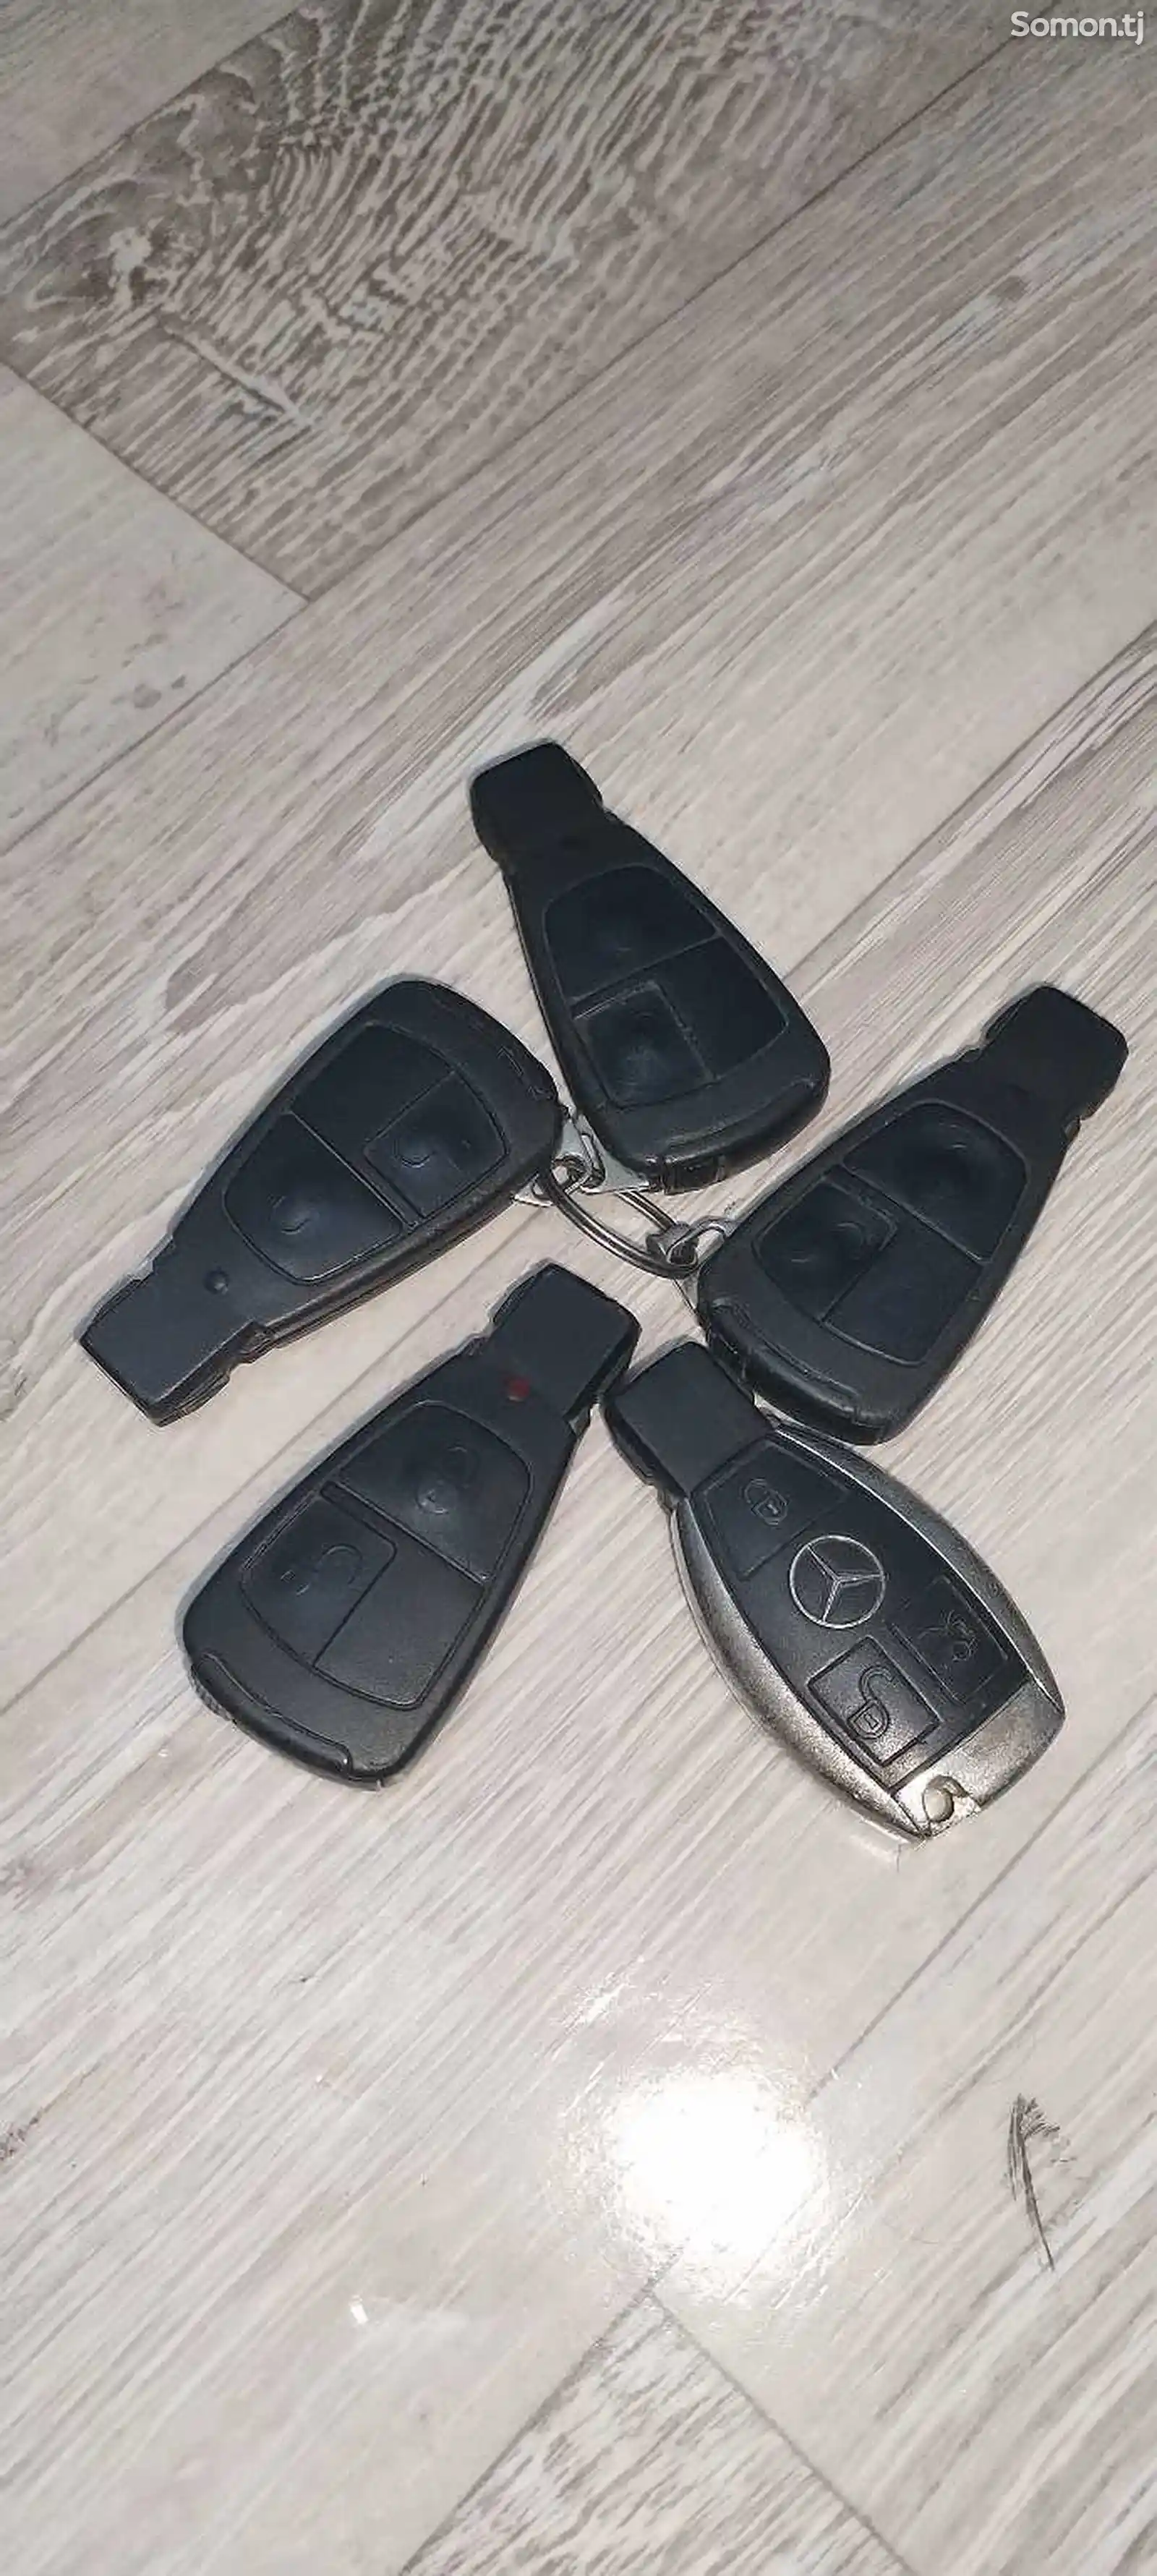 Ключи от Mercedes-Benz-1